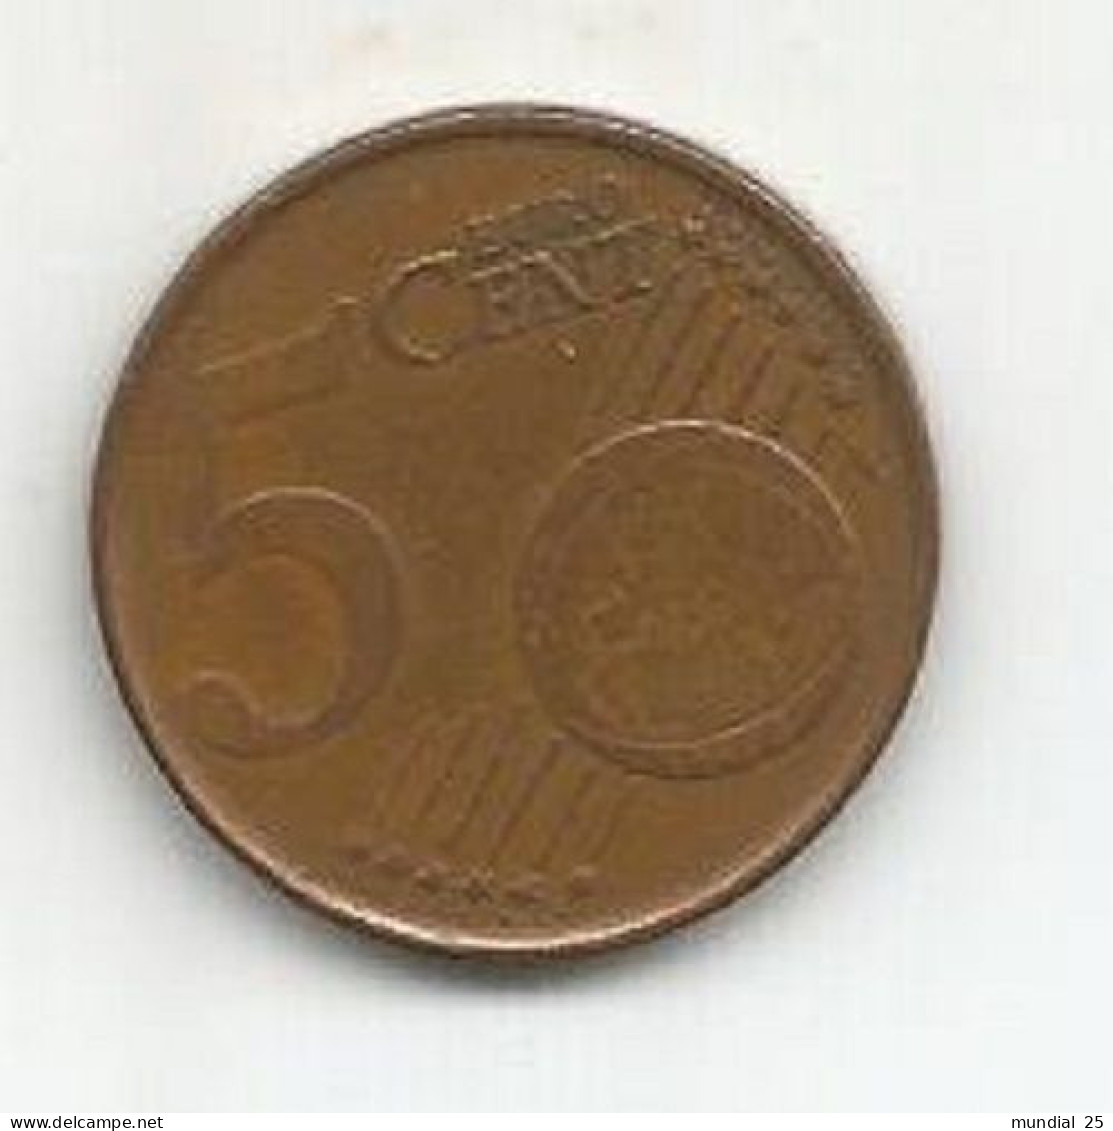 BELGIUM 5 EURO CENT 1999 - Belgio